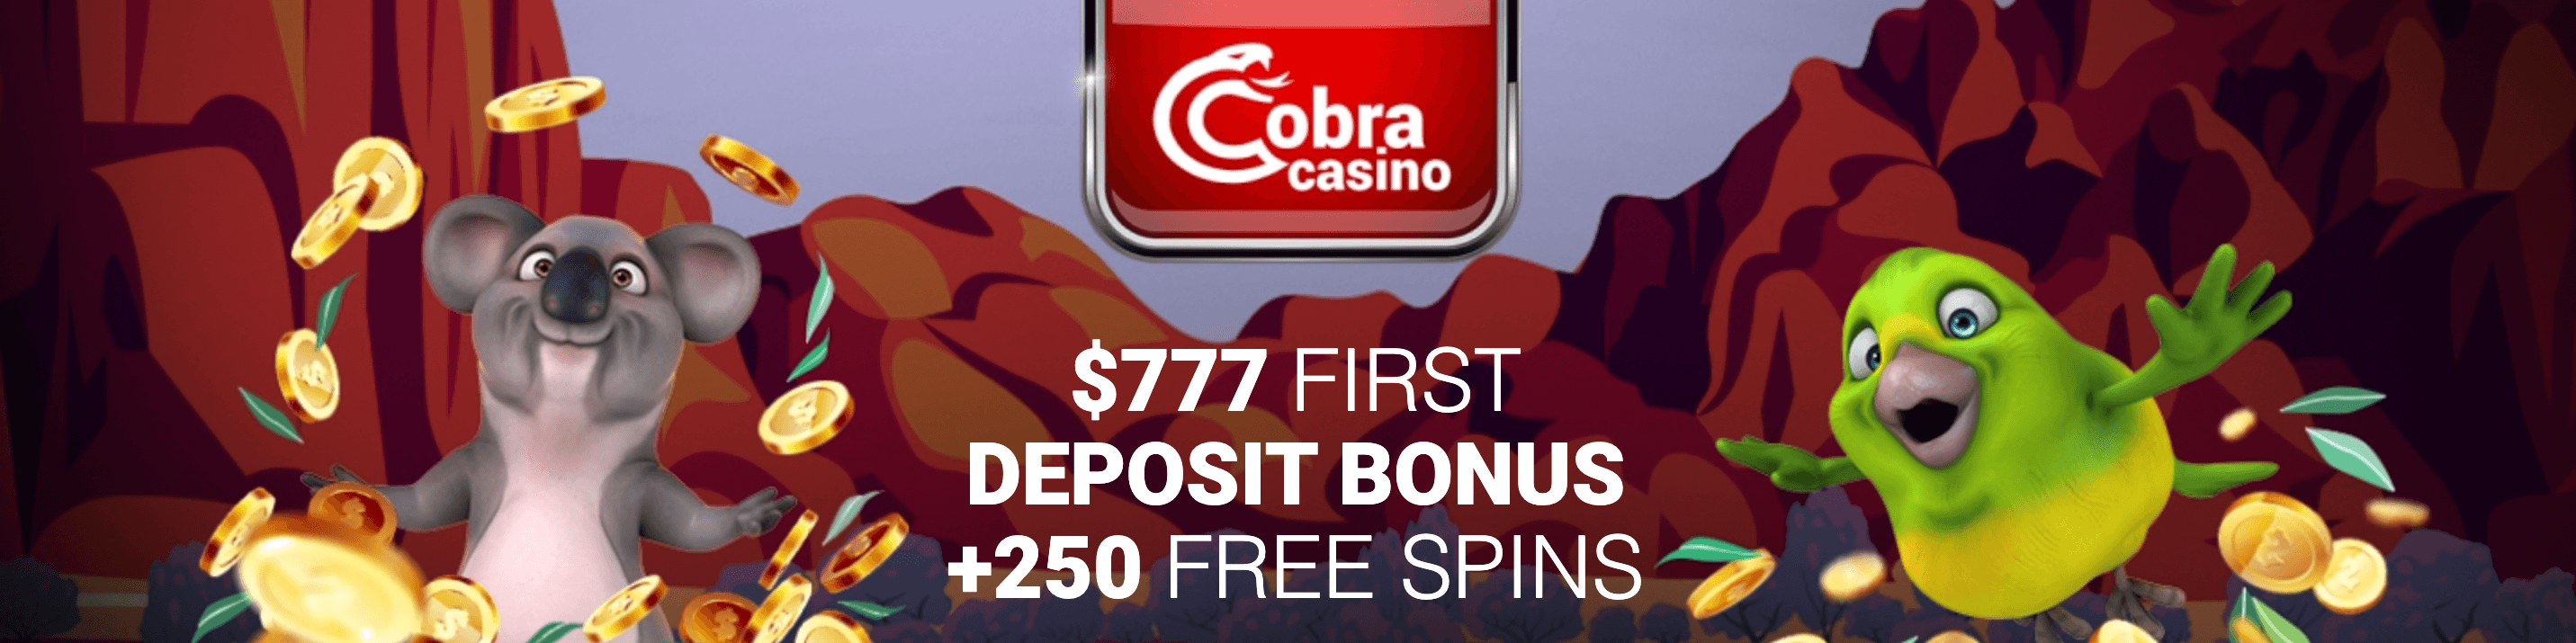 Cobra Casino Review